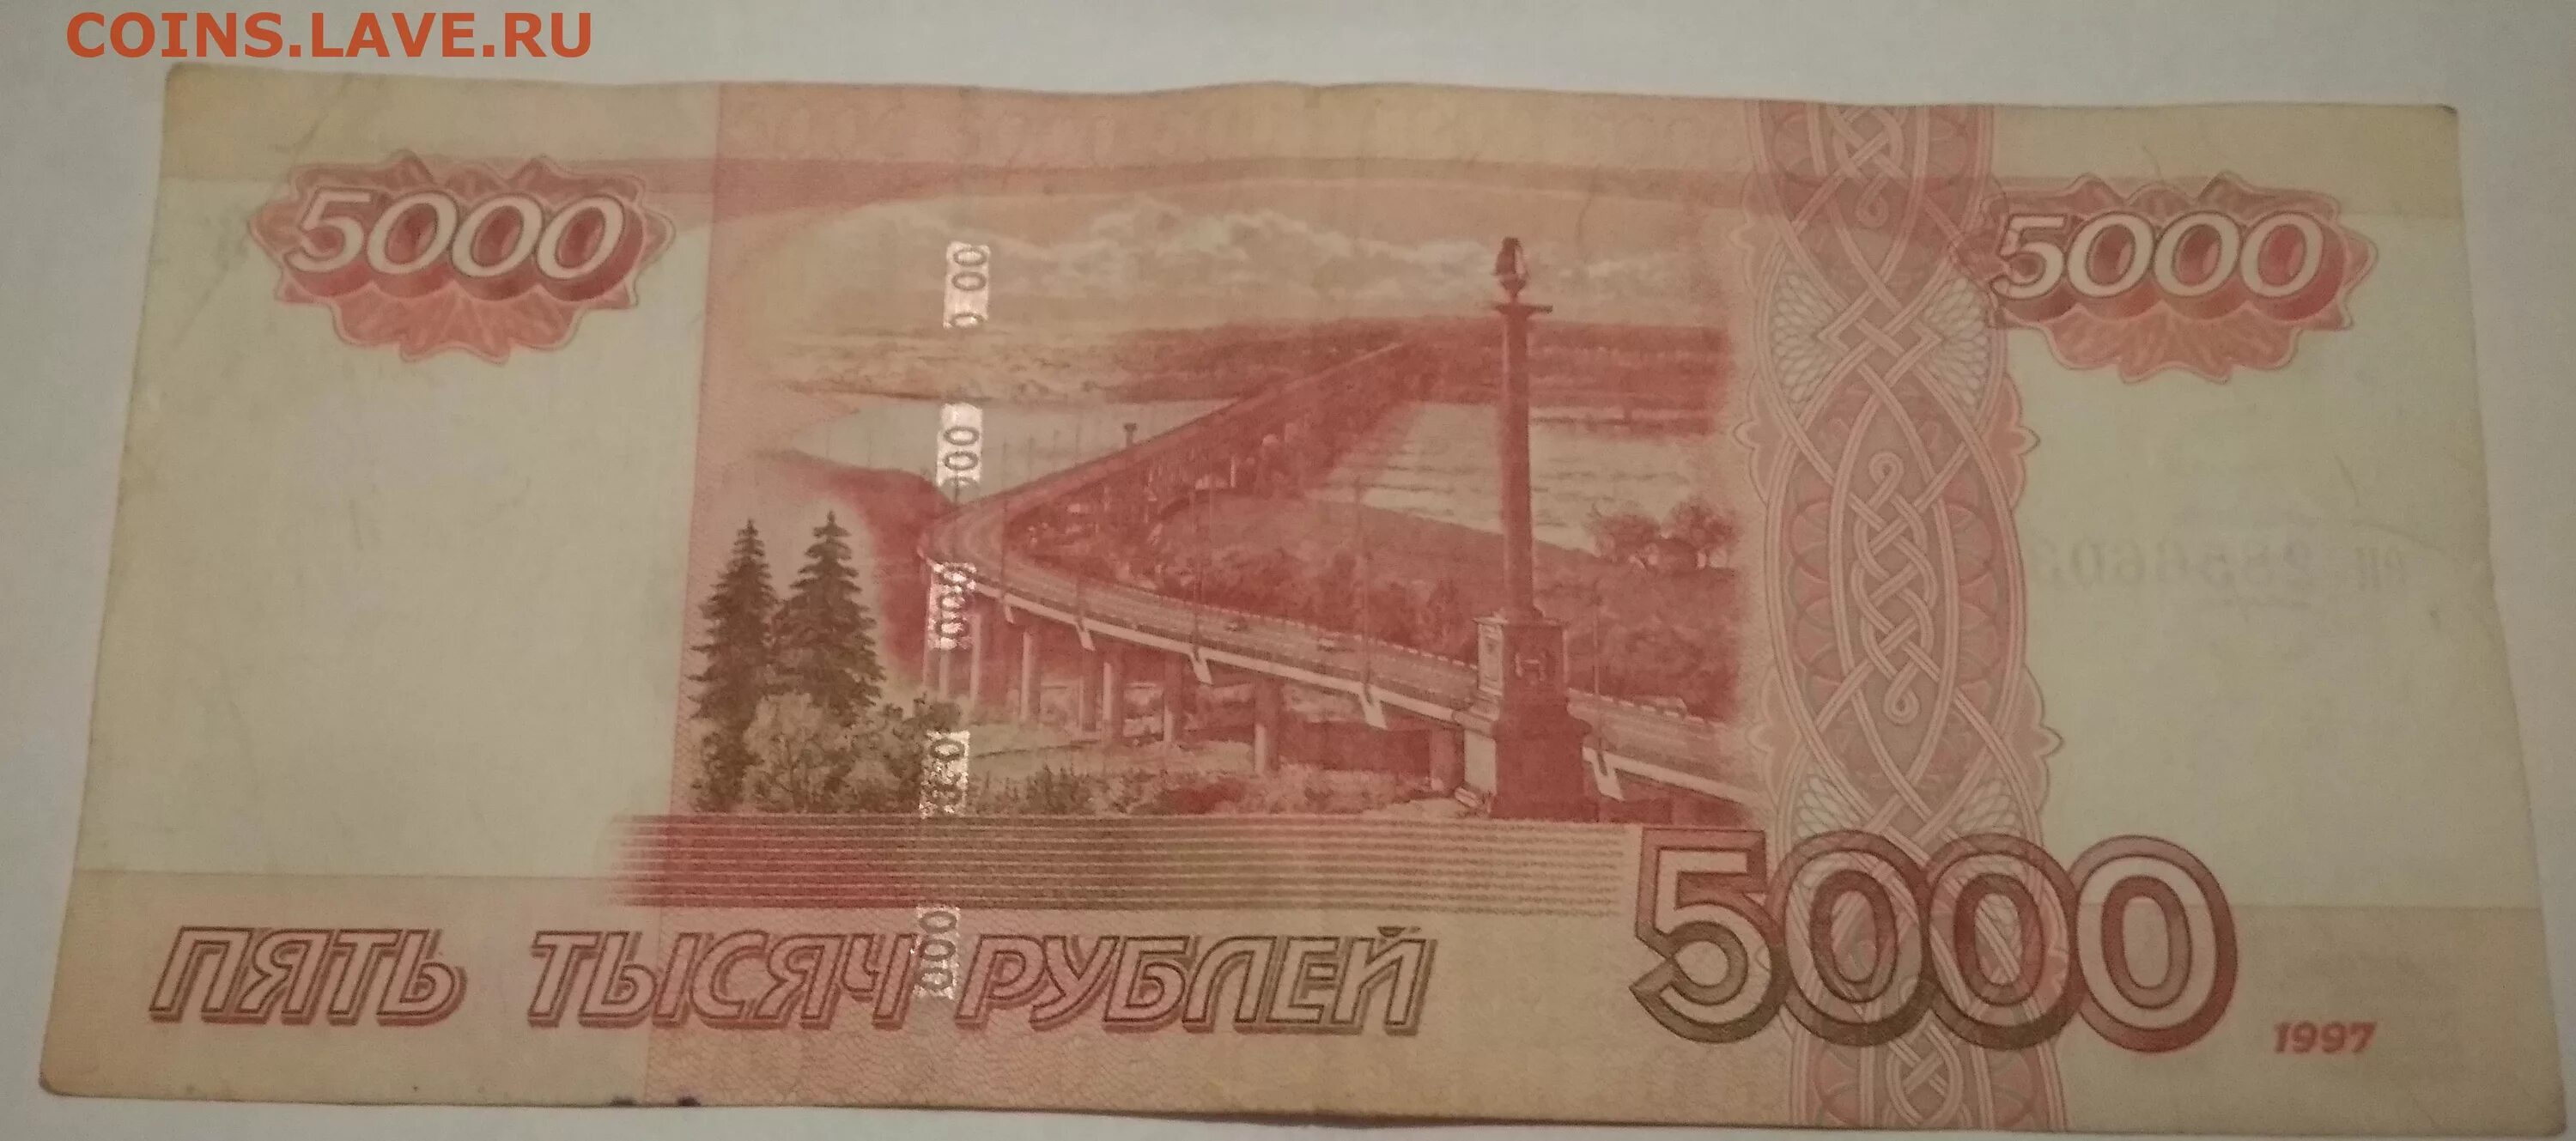 Рубль образца 1997. Купюра 5000 рублей. 5000 Рублей 1997г. Банкнота 5000 рублей 1997. Пять тысяч рублей 1997.